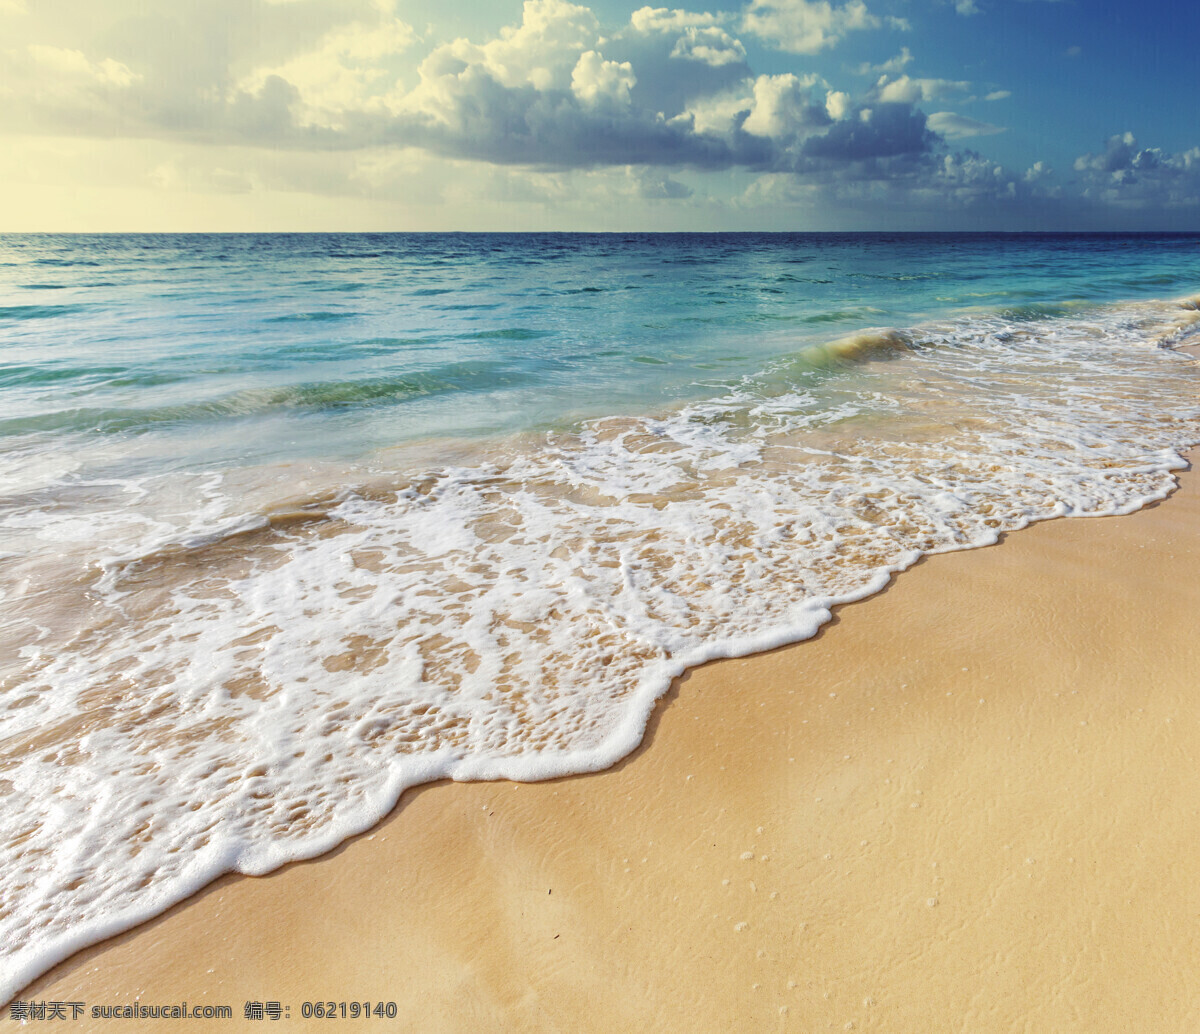 海边 沙滩 风光 海洋海边 自然风景 海边风光 云朵 大海 大海图片 风景图片